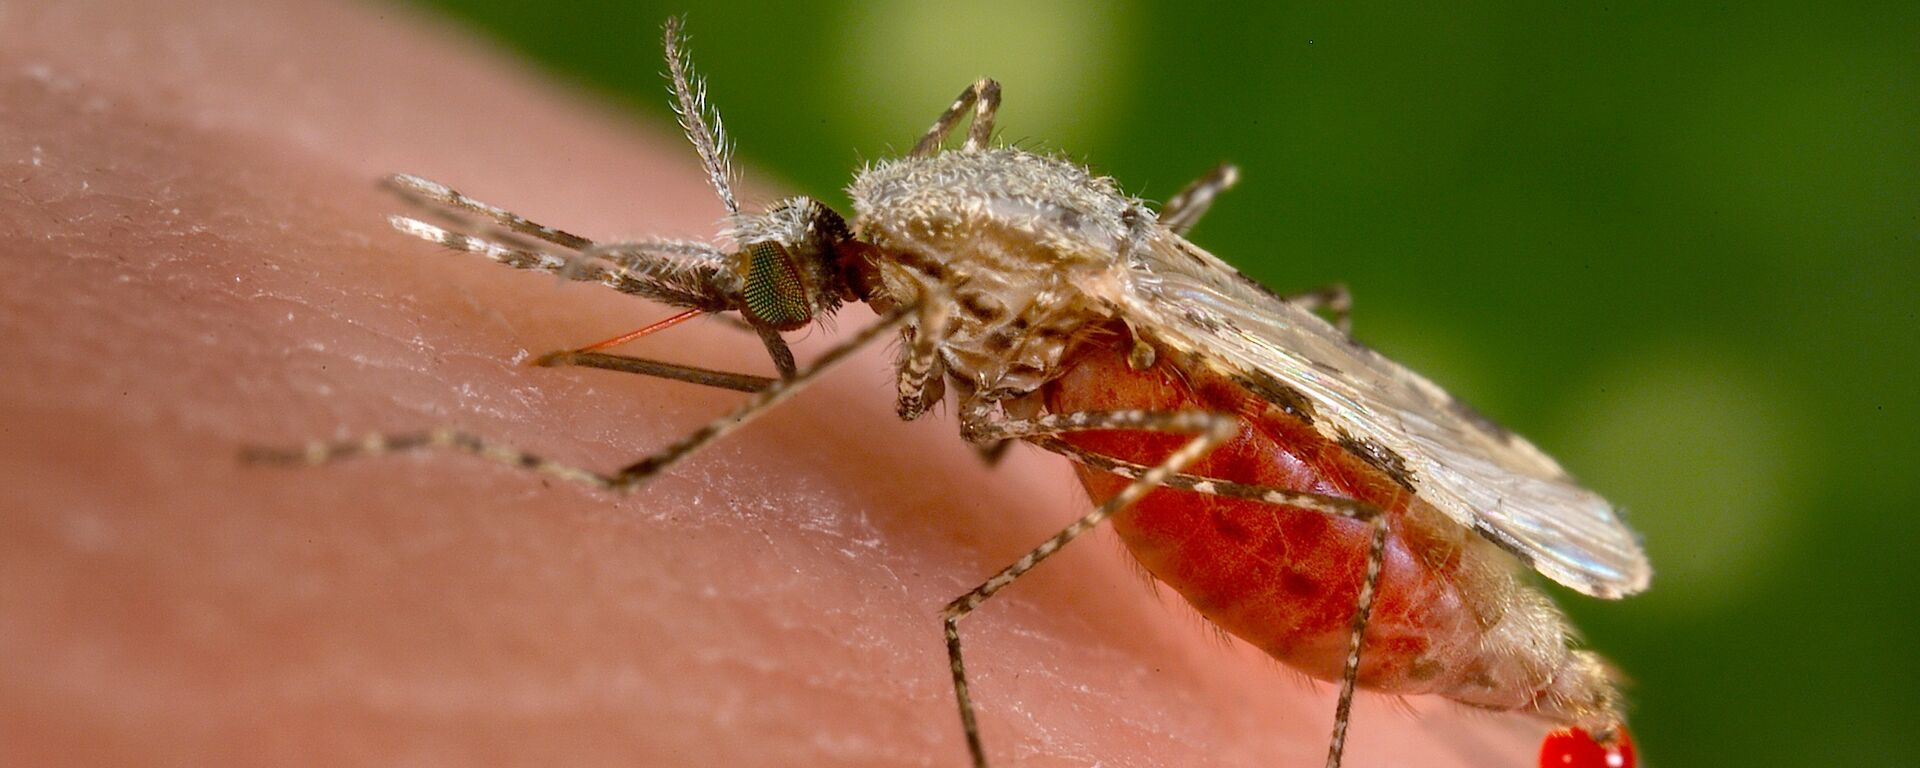 El mosquito Anopheles stephensi es el responsable de trasmitir la malaria a los humanos - Sputnik Mundo, 1920, 08.07.2021